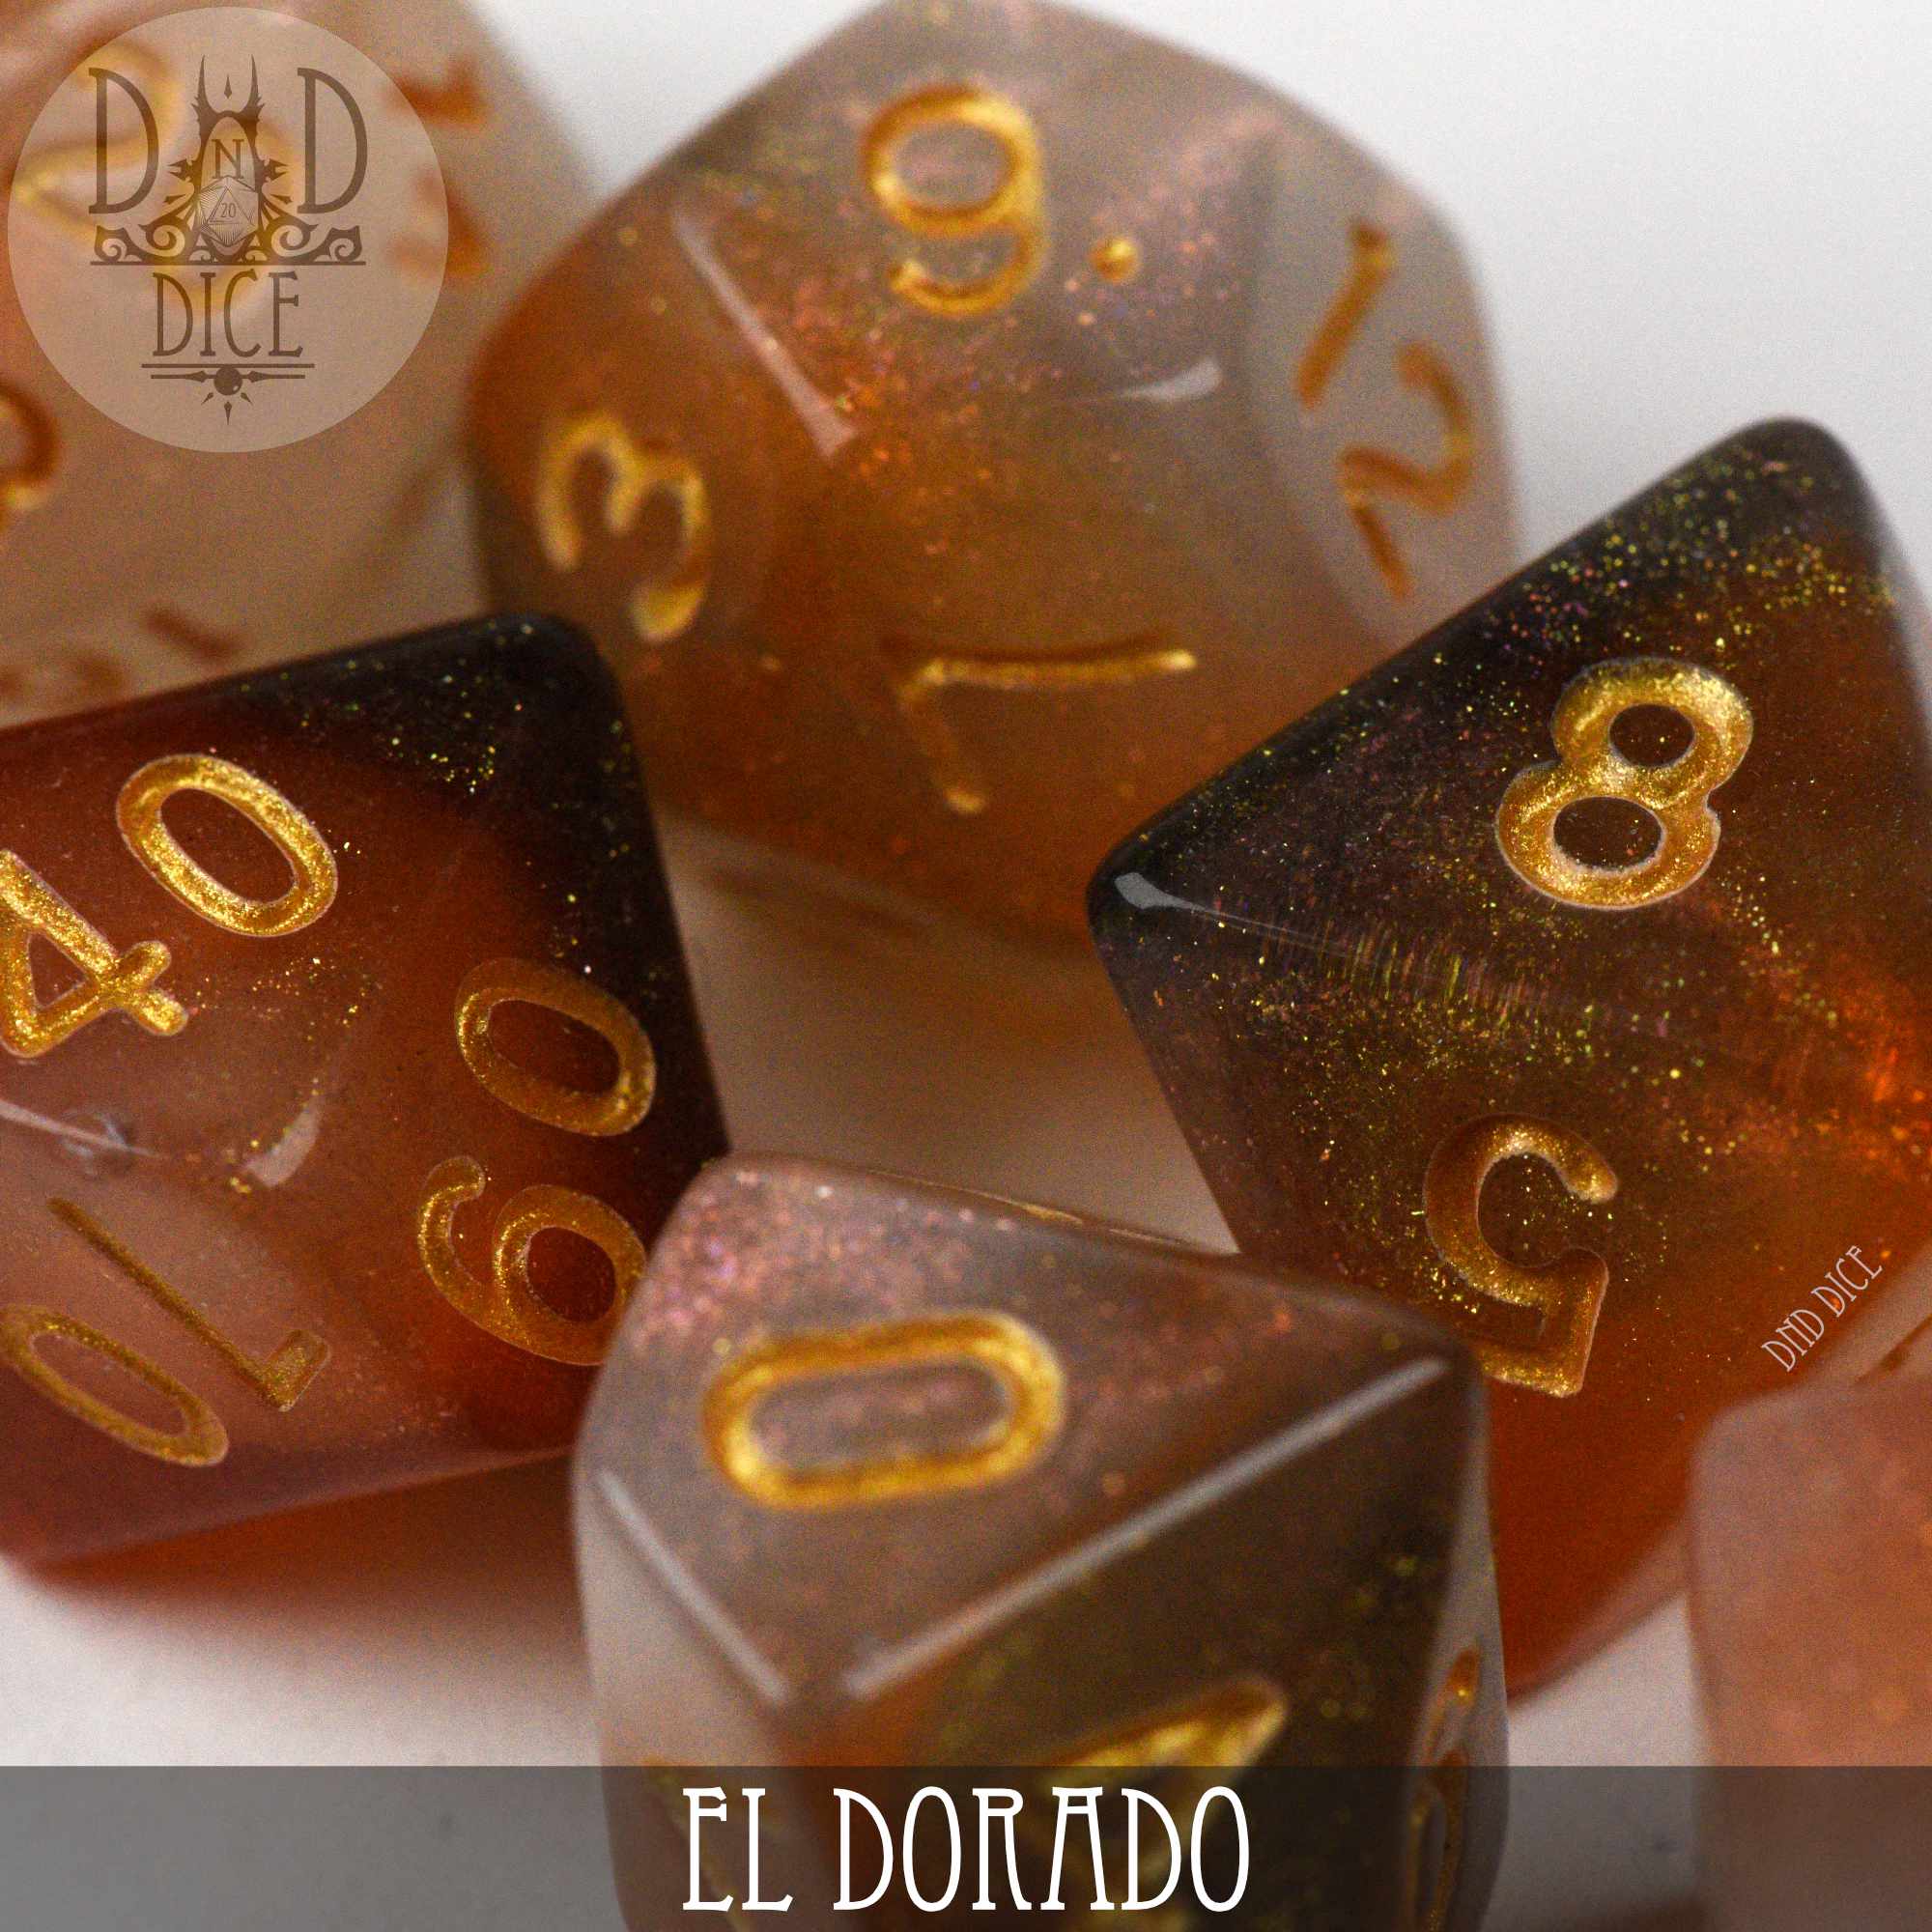 El Dorado Dice Set